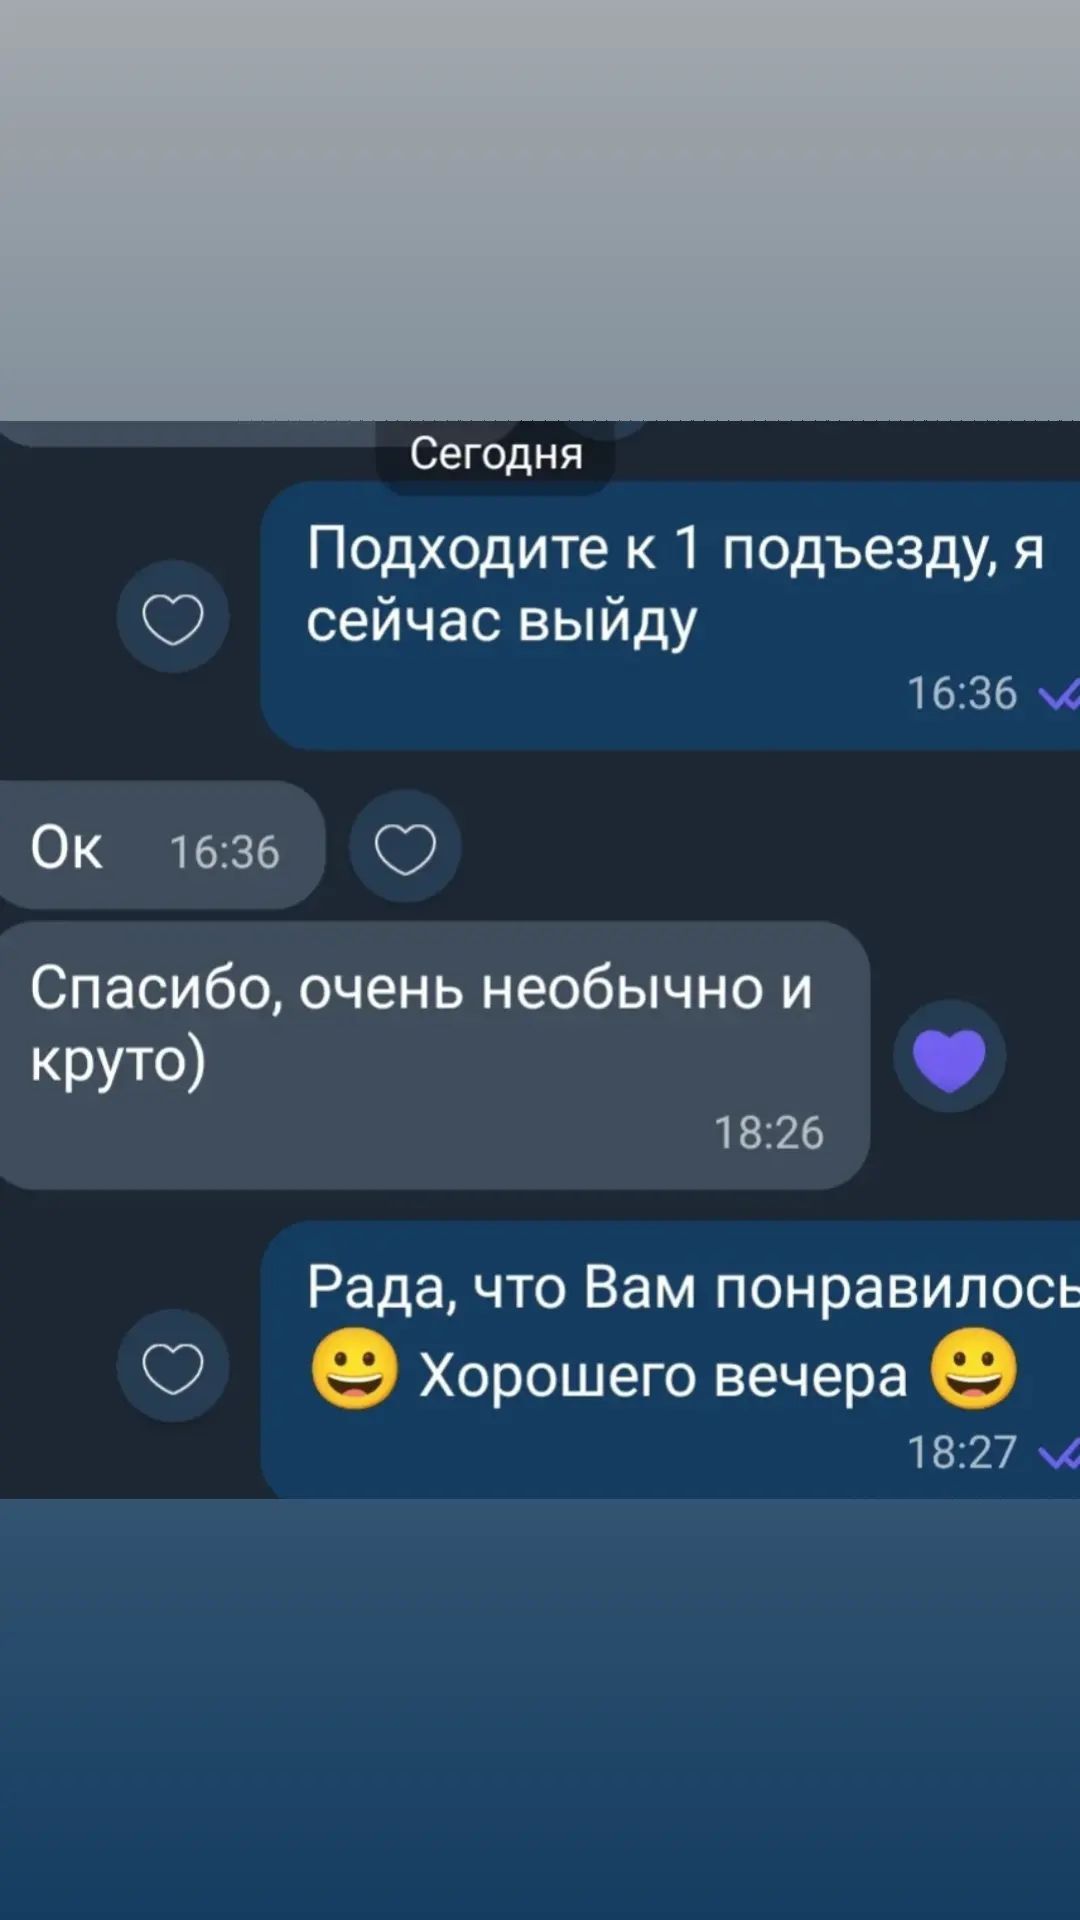 Дорогой эффективный массаж Харьков